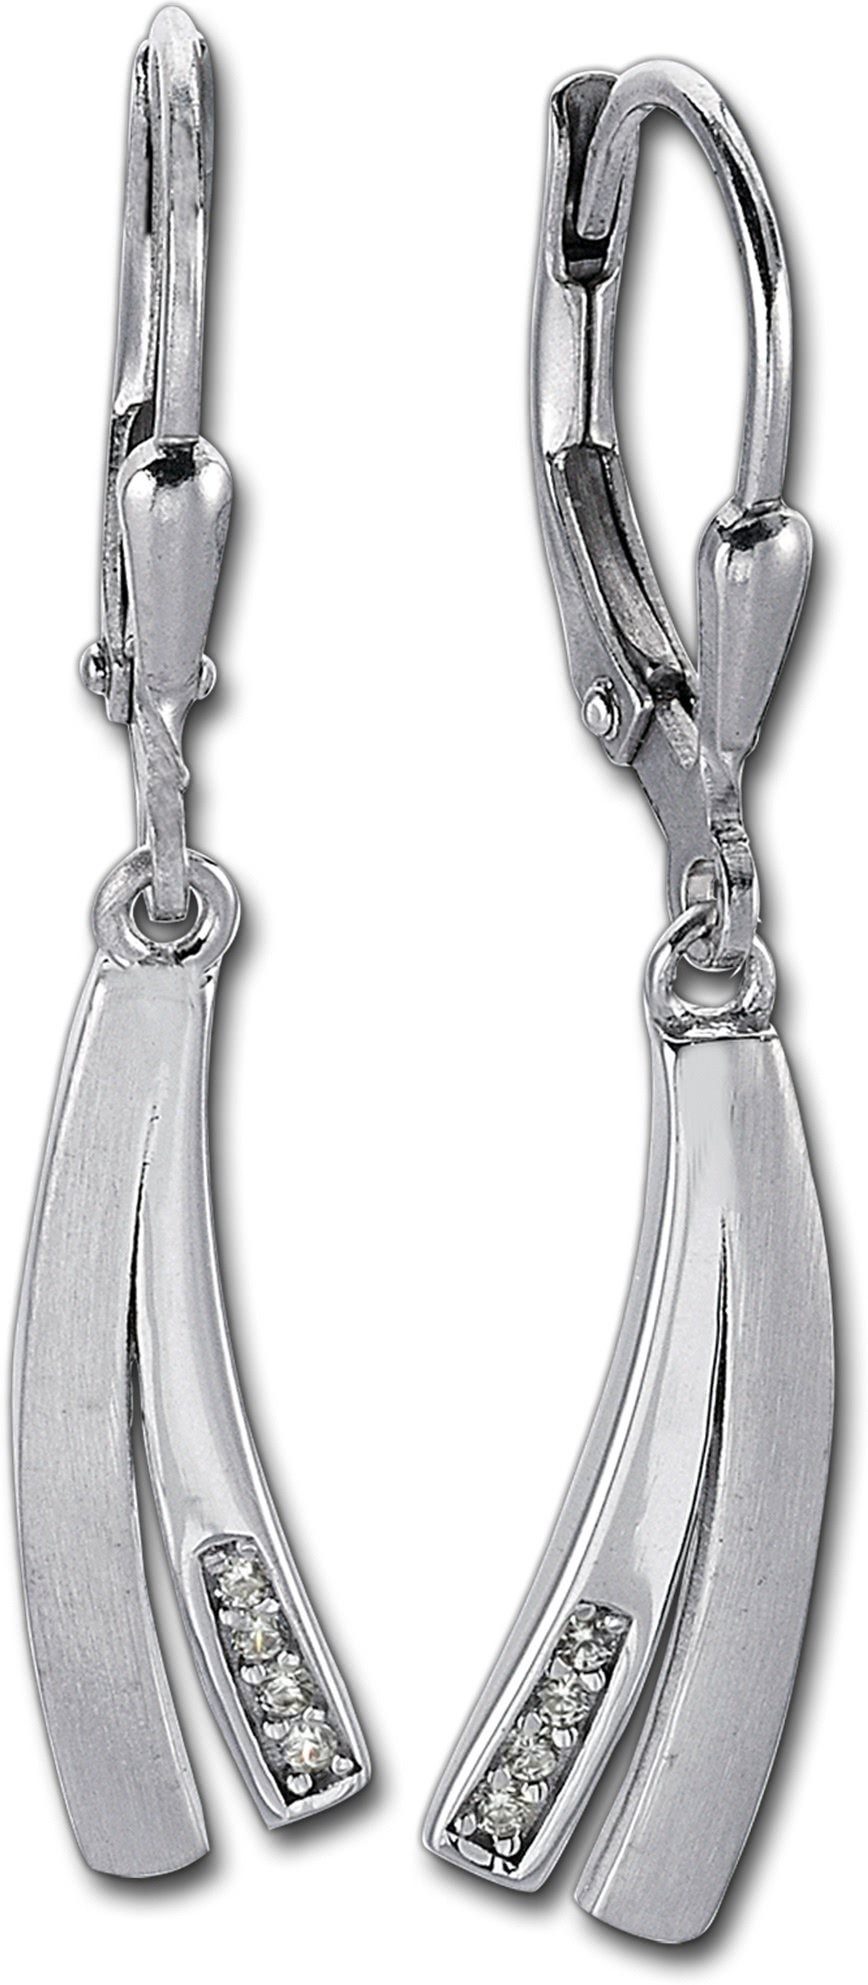 Balia Paar Ohrhänger Balia Damen 3,5cm Länge aus Sterling Fantasie (Ohrhänger), 925 Ohrhänger poliert Ohrringe und matt ca. Damen Silber